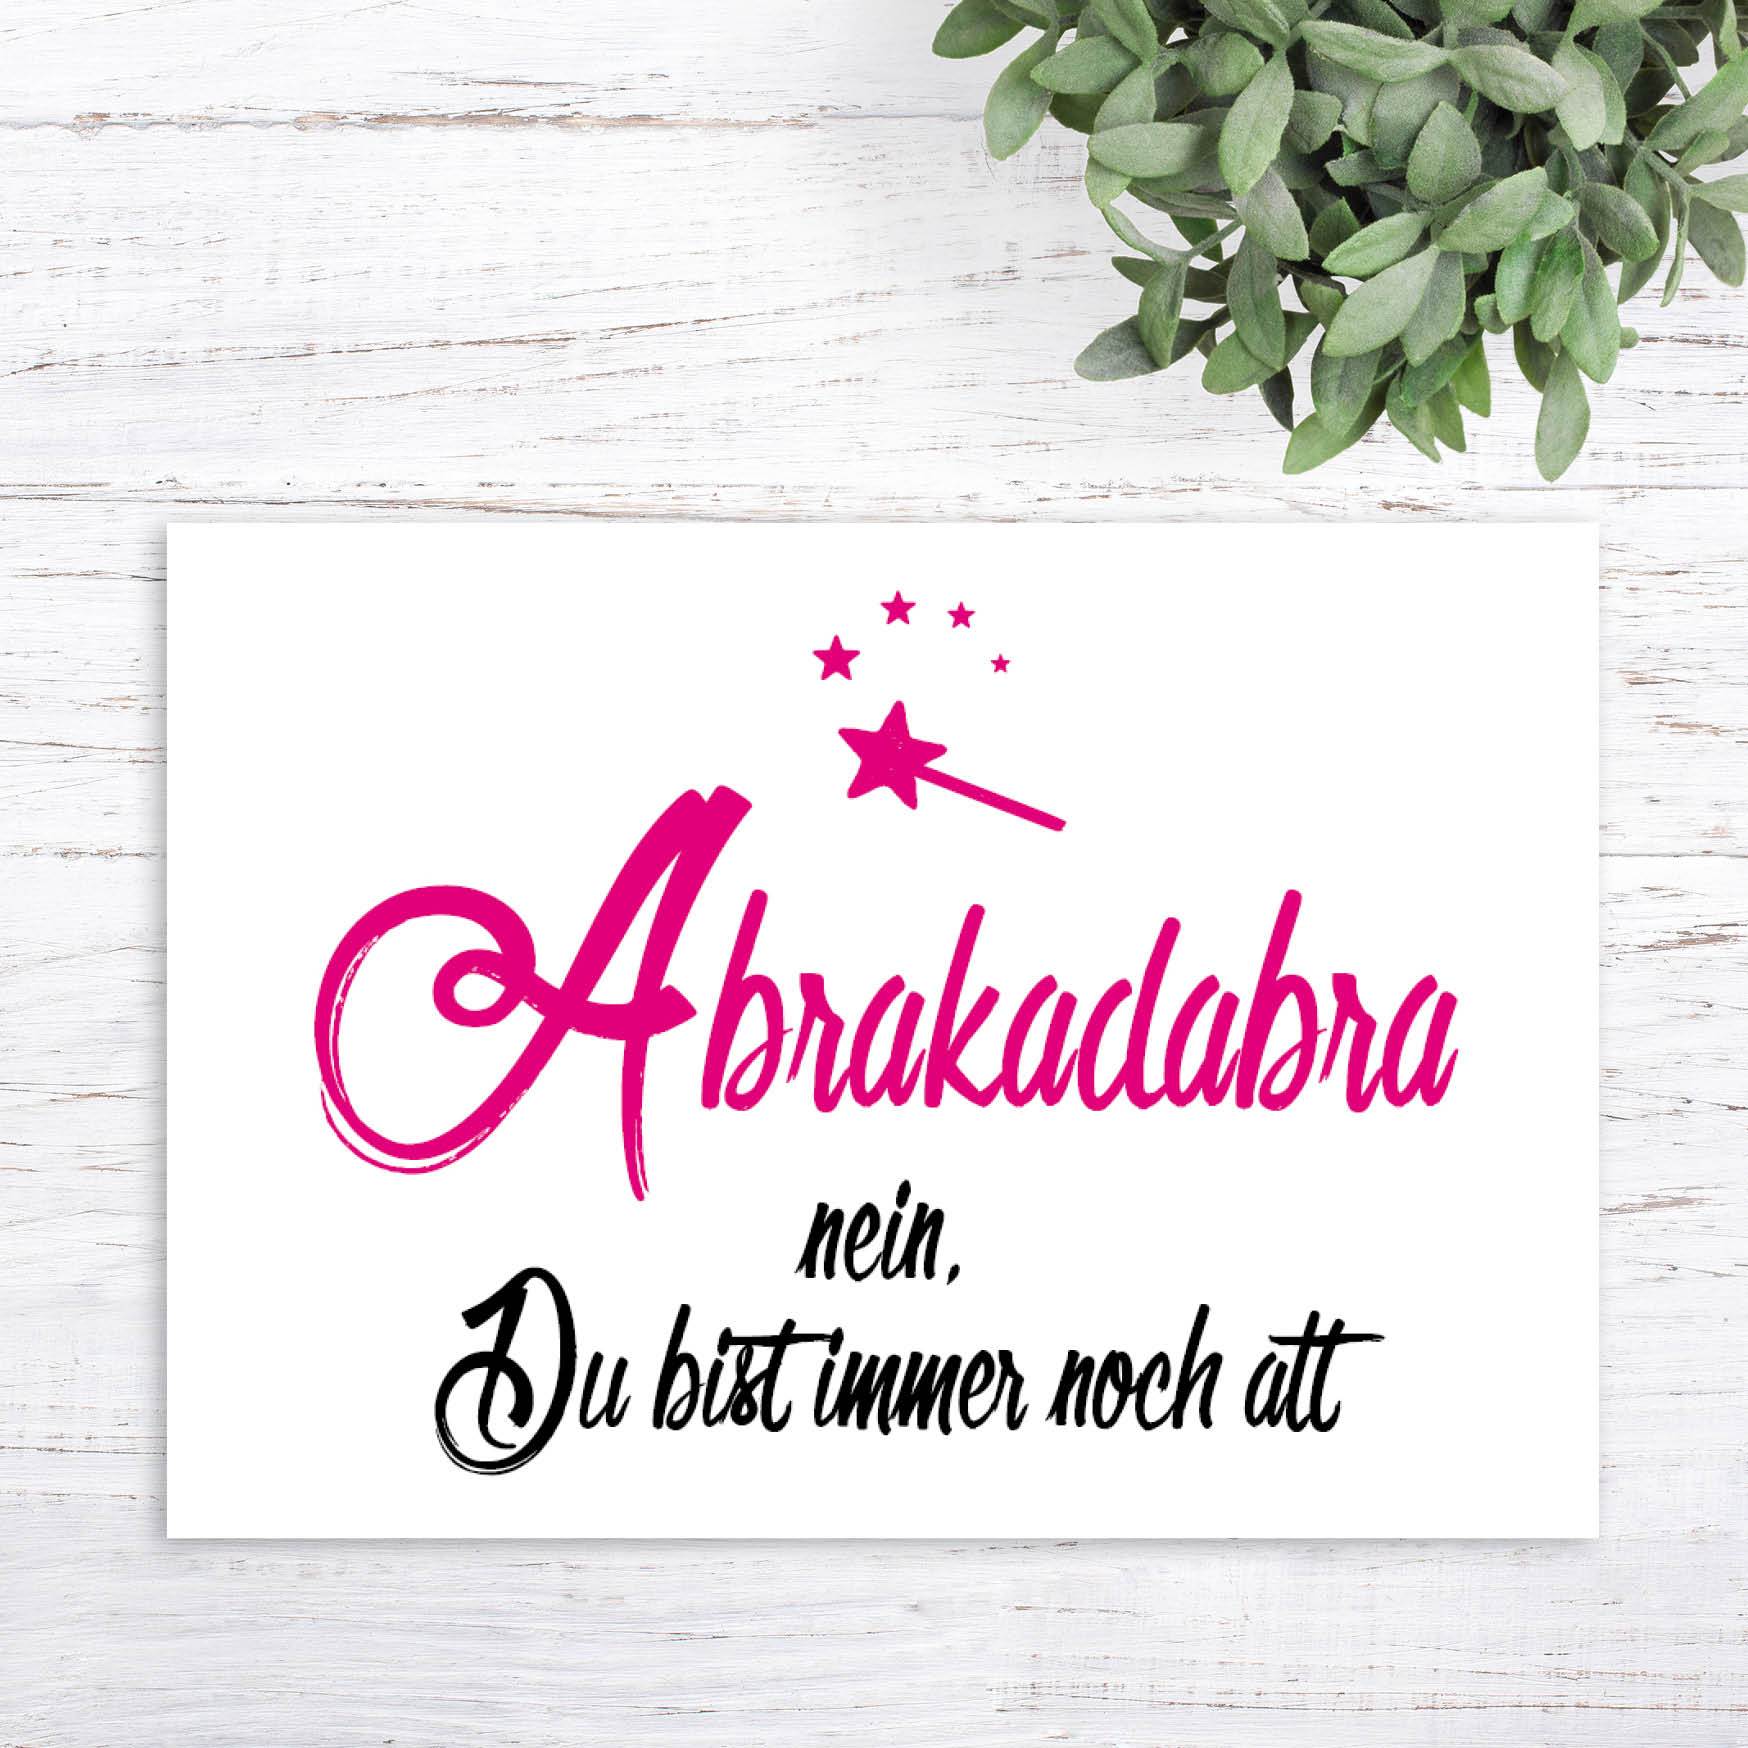 Glückwunsch - Postkarte: ABRAKADABRA! - Individuelle Einladung